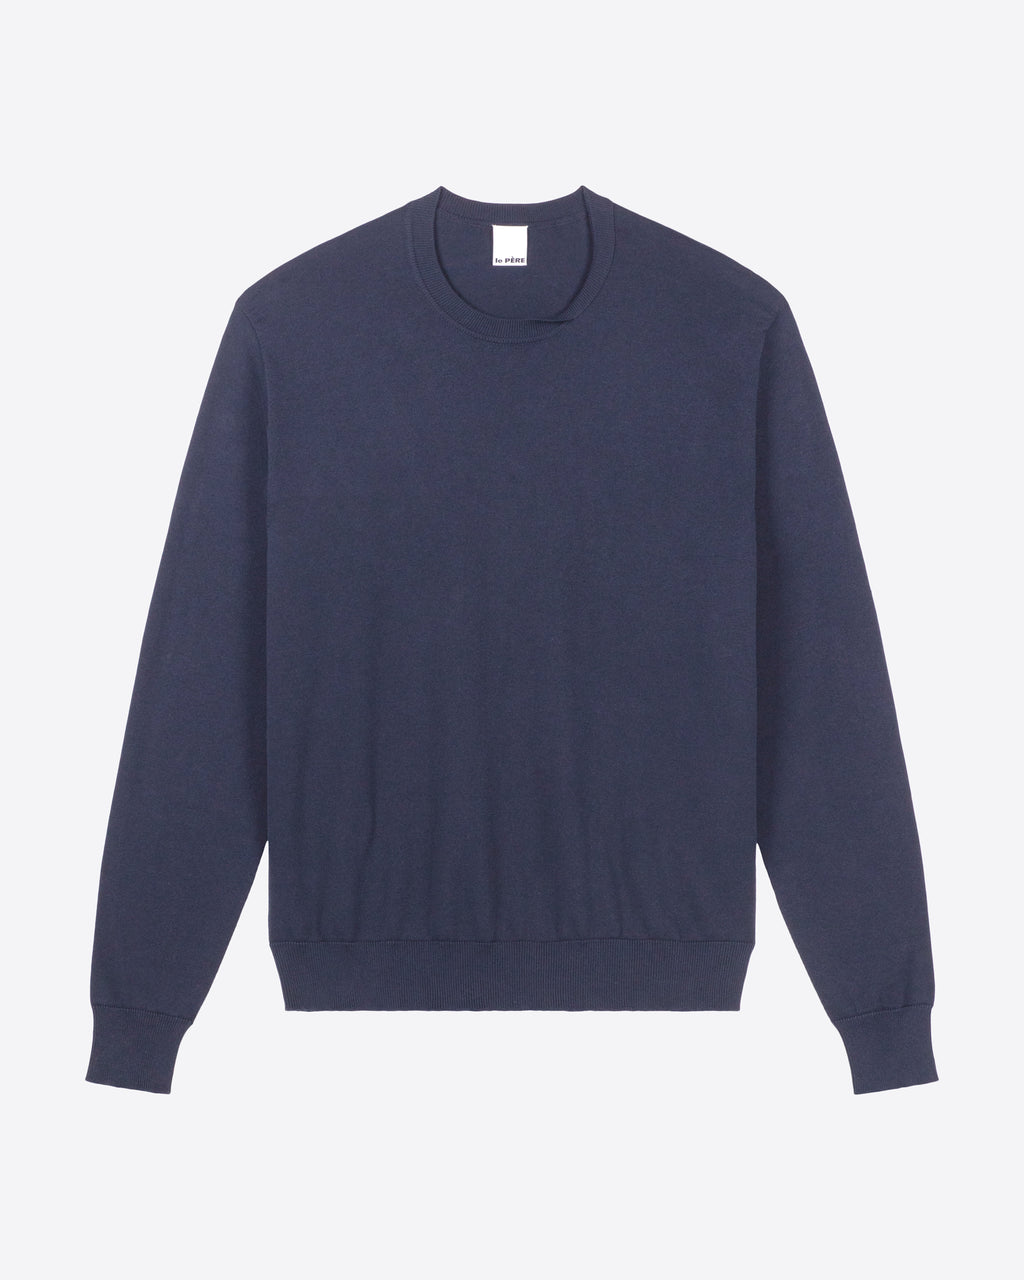 le PÈRE Blue Twisted Sweater - Front